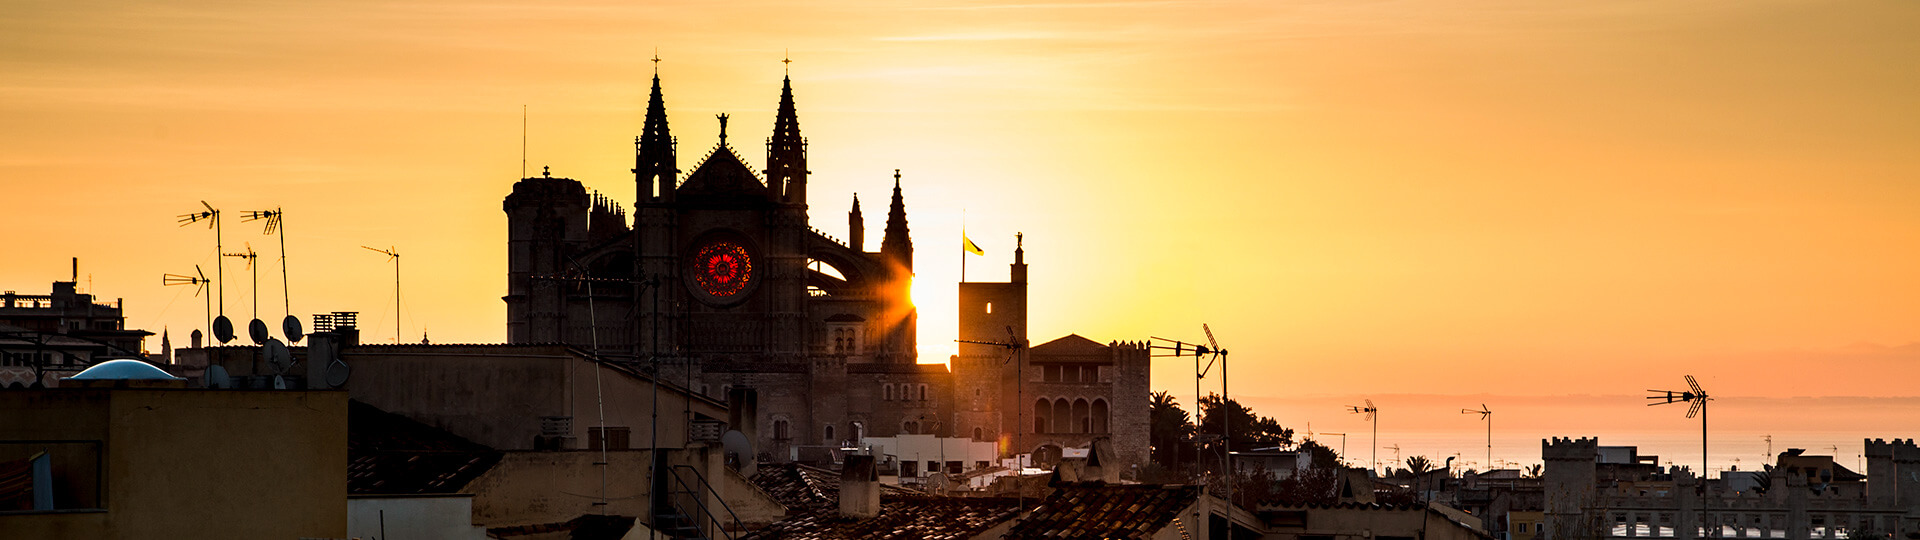 Cathédrale de Palma de Majorque au coucher du soleil